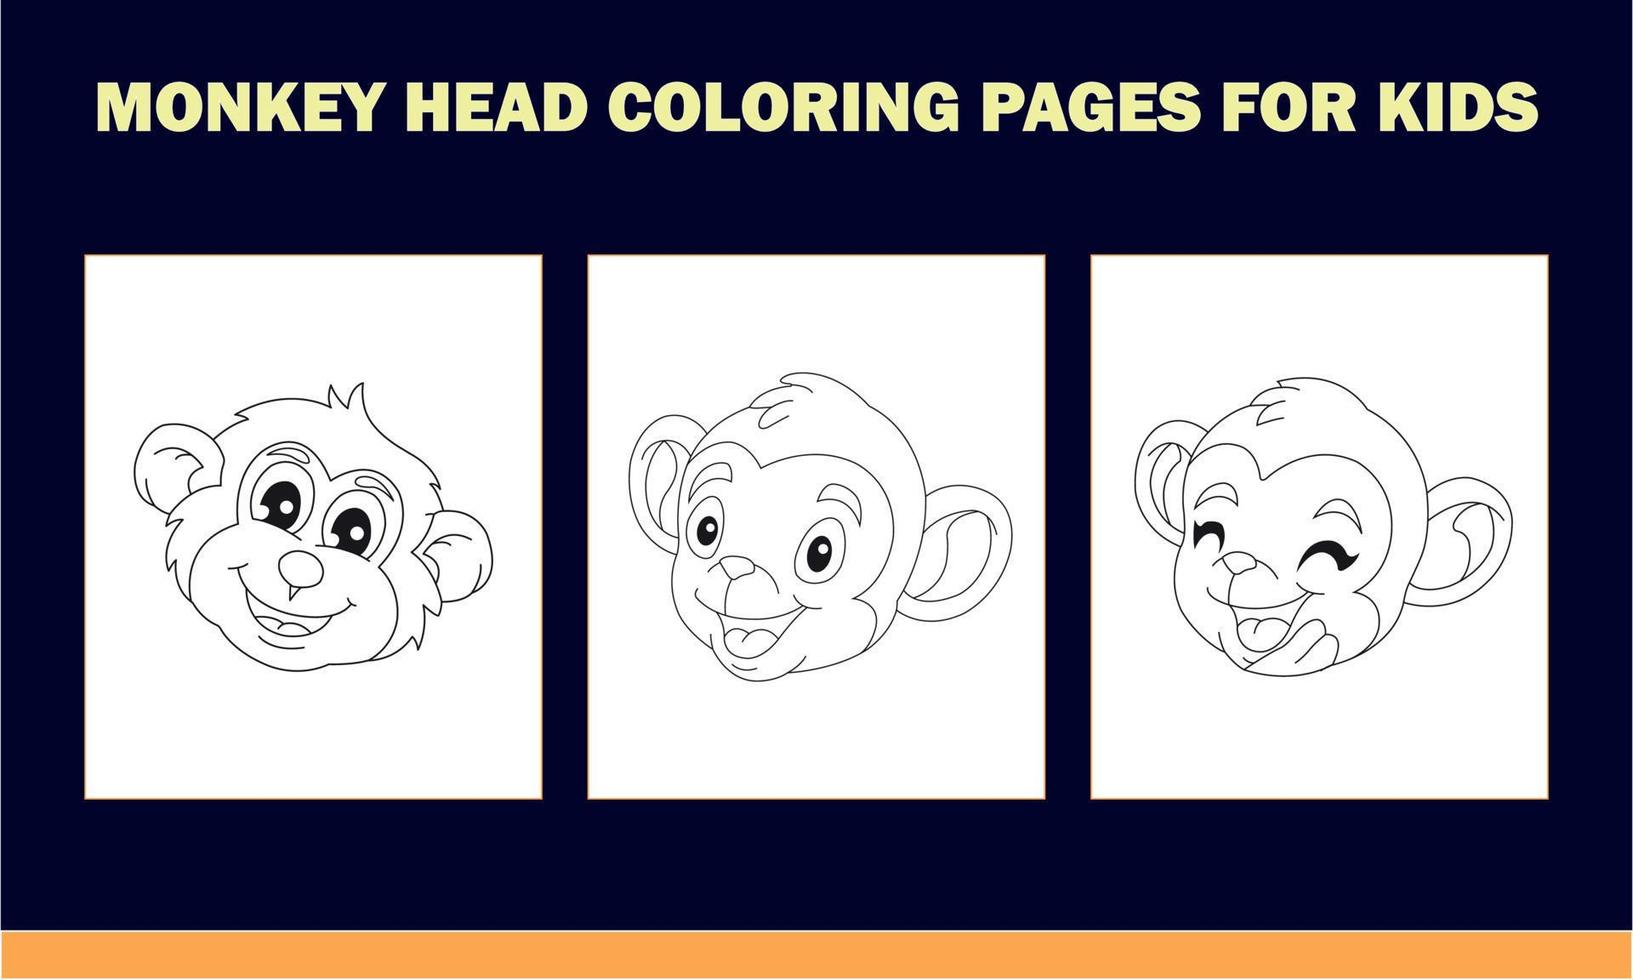 libro para colorear cabeza de mono para niños vector